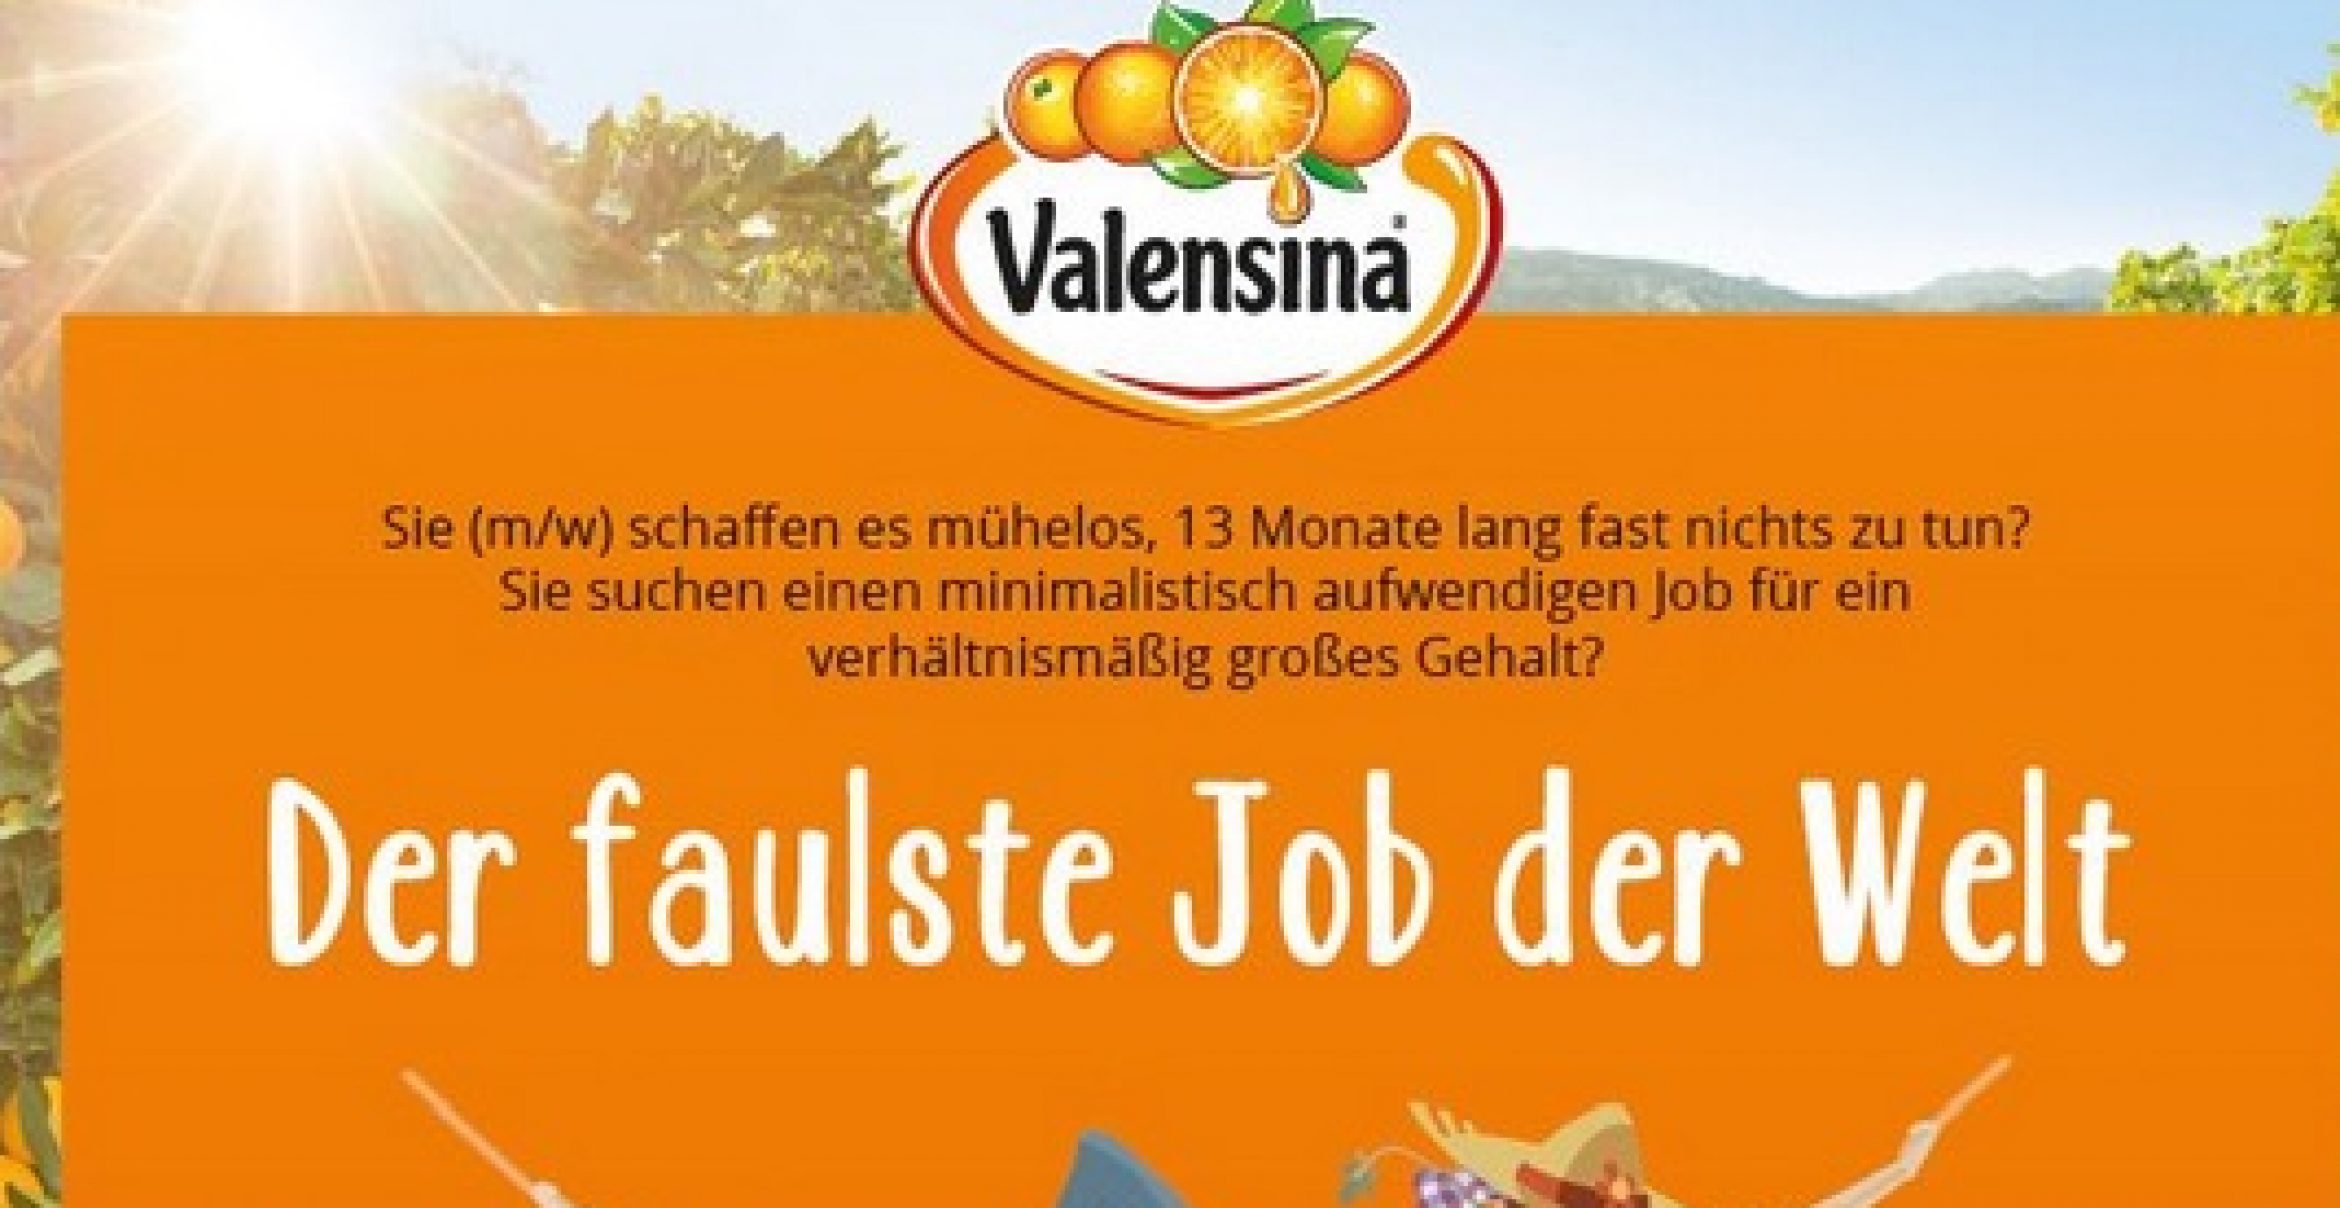 Valensina hat den wahrscheinlich faulsten Job der Welt für euch